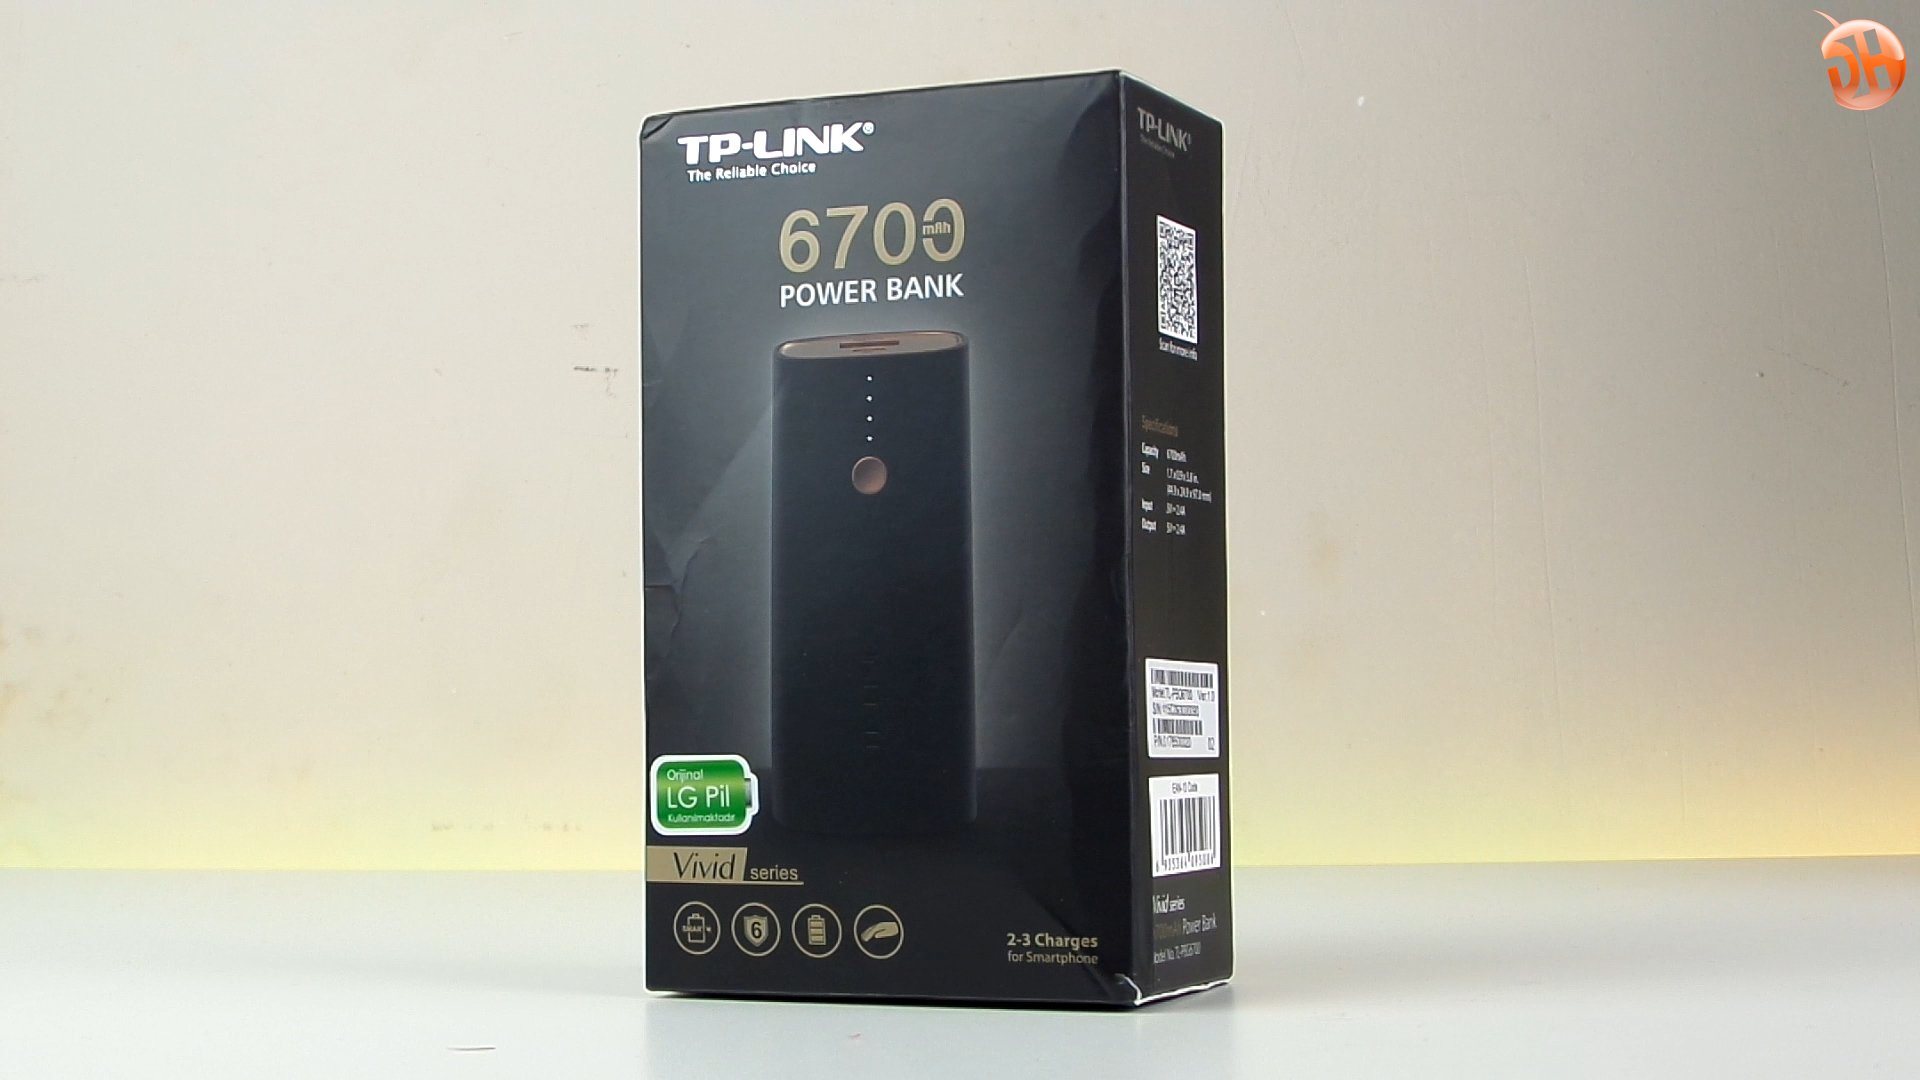 TP-Link'in yeni seri ViVid 6700mAh powerbank'ini inceliyoruz